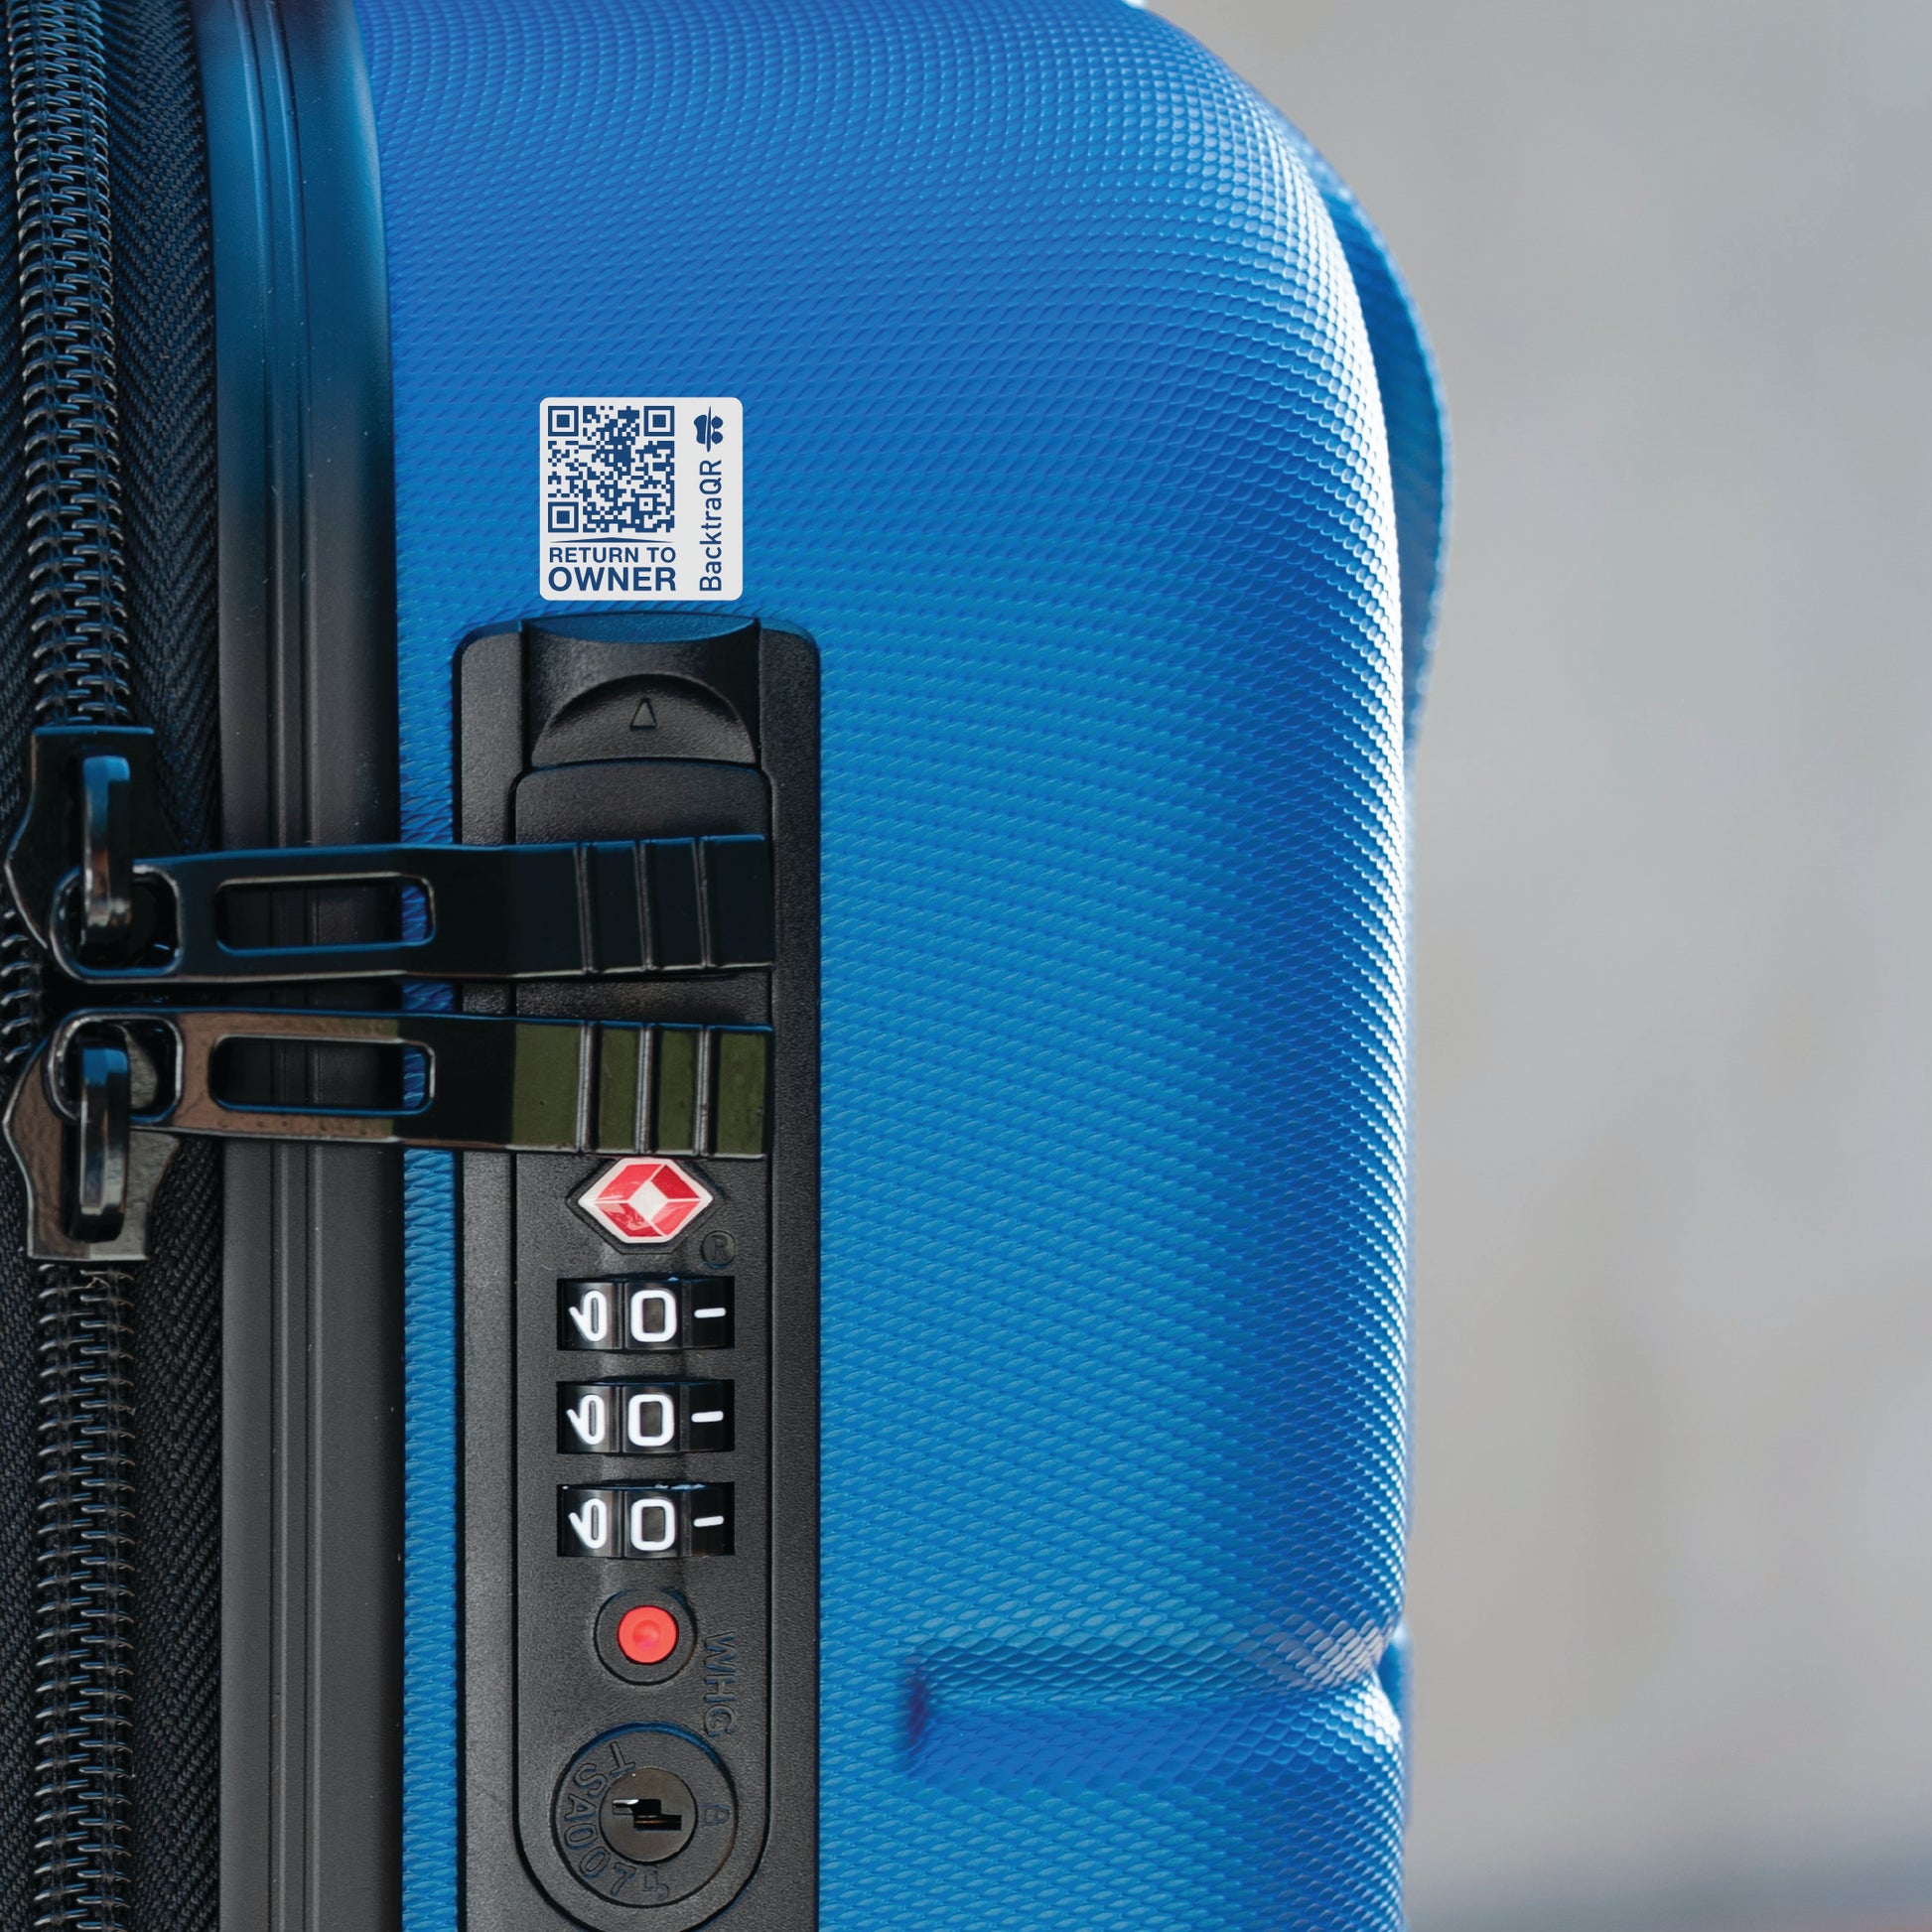 En koffert forsvinner fort, finneren kan chatte direkte med deg etter å ha skannet QR-koden! Smart eller?